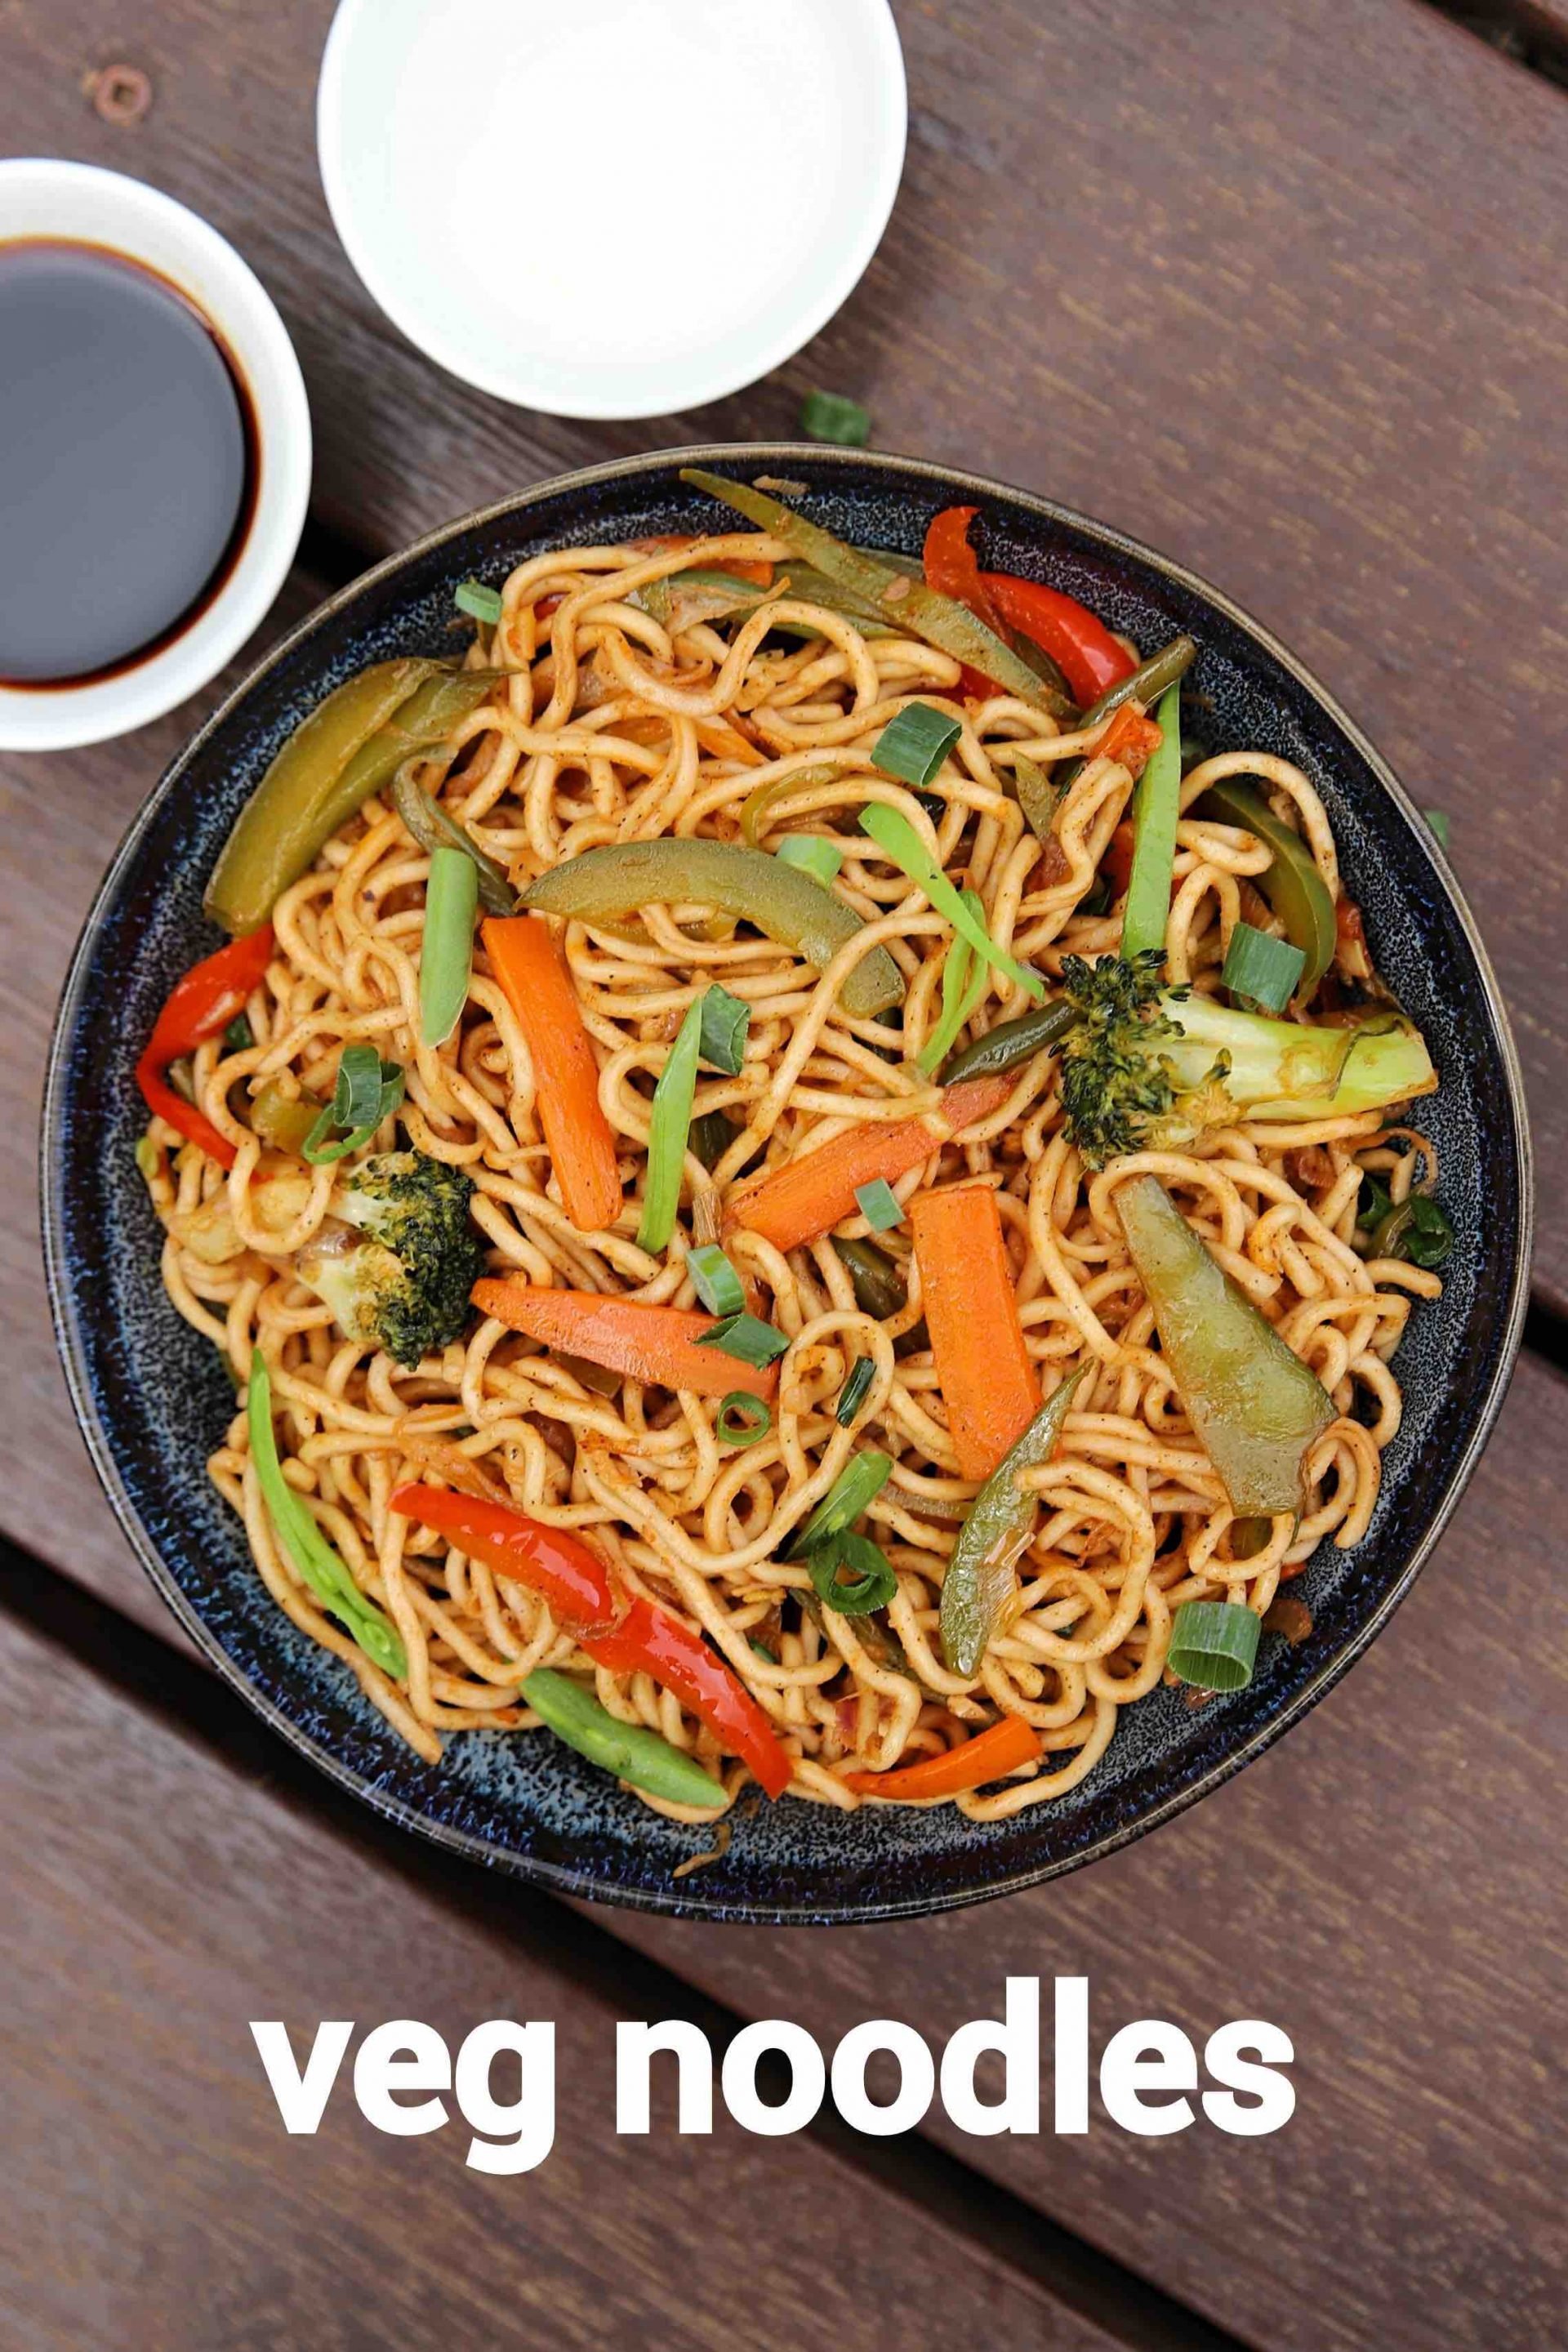 veg noodles recipe | vegetable noodles | how to make noodles recipe